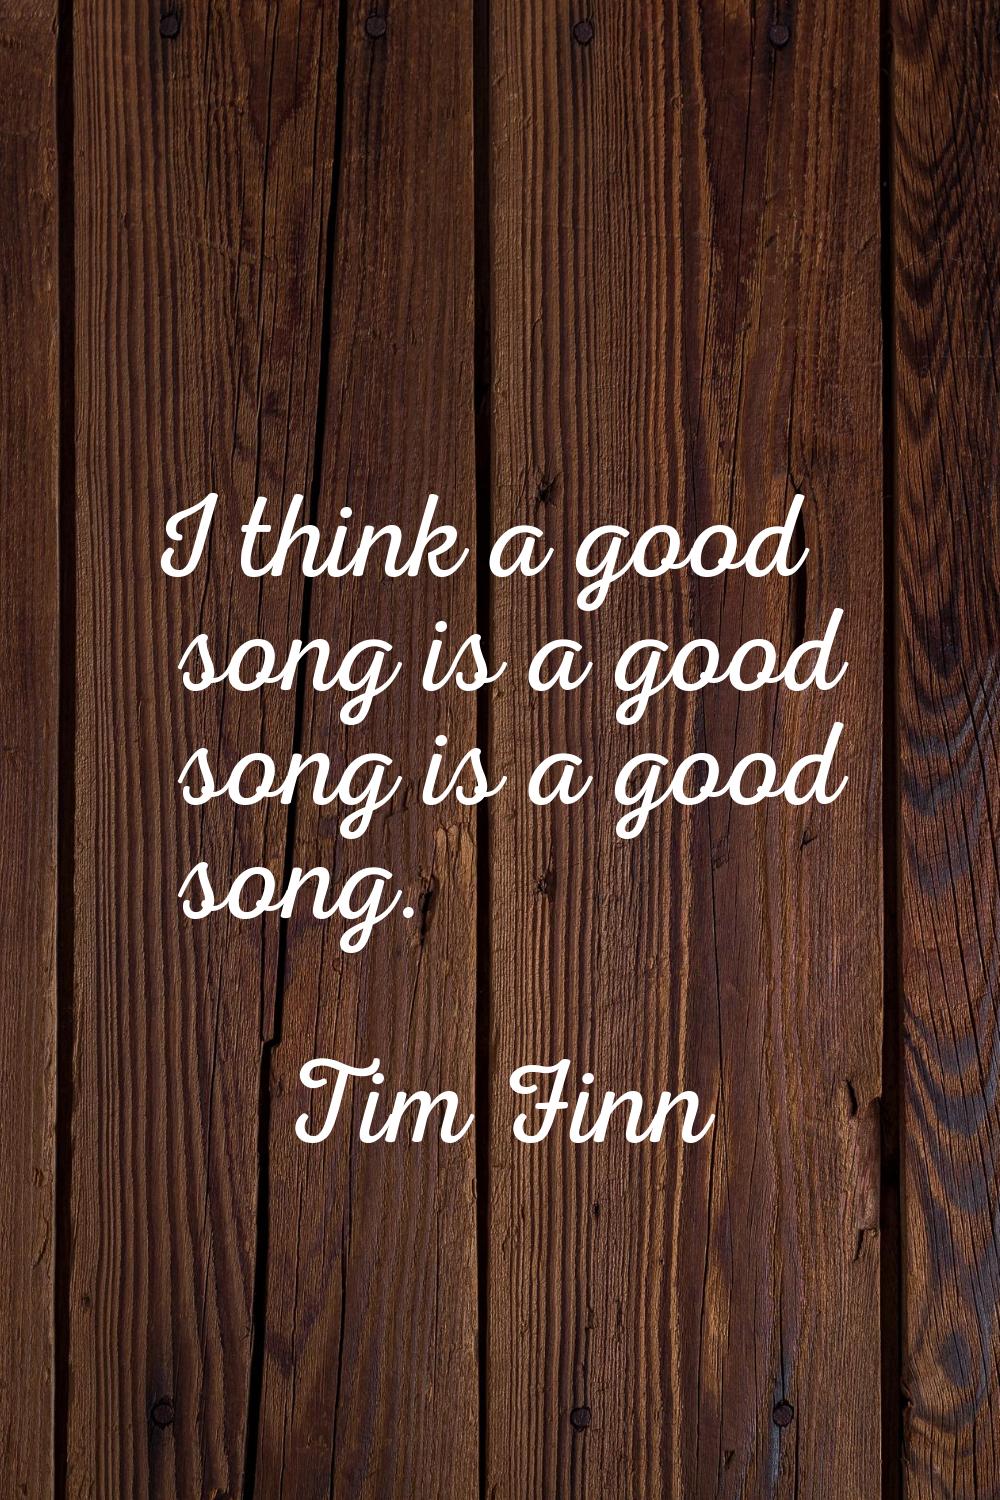 I think a good song is a good song is a good song.